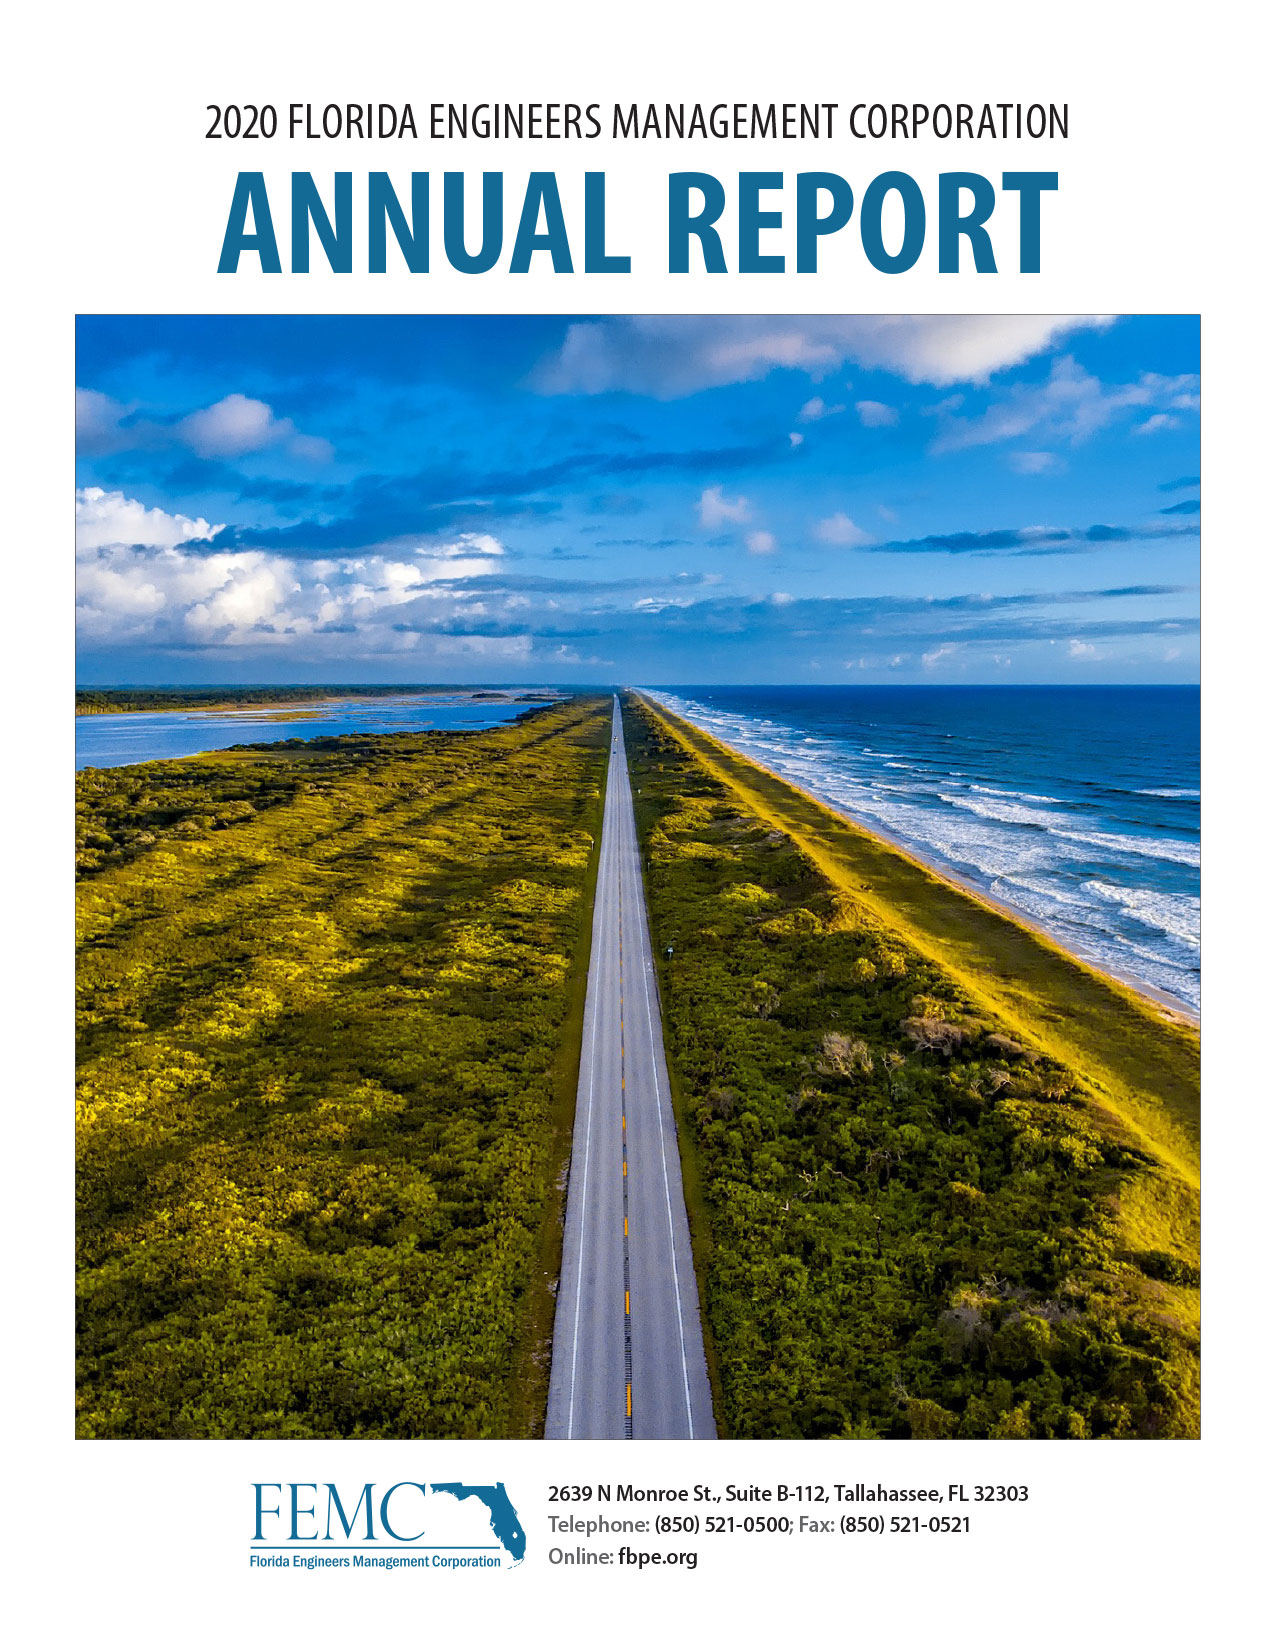 2019-20 FEMC Annual Report